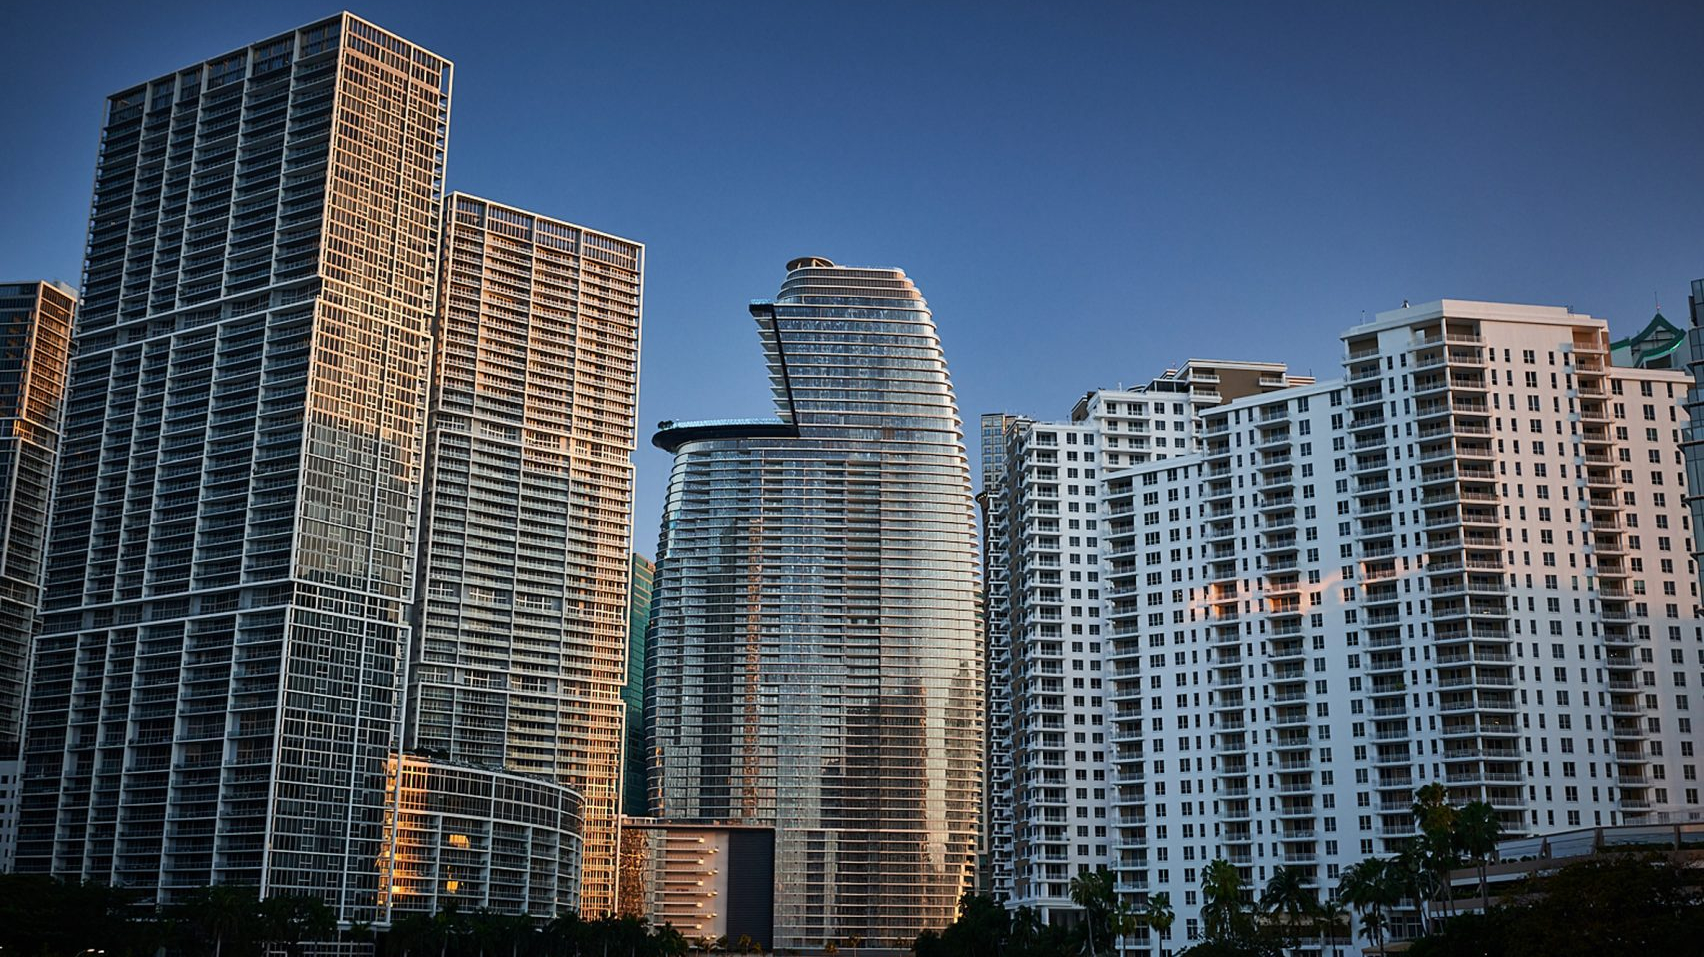 Dezeen Debate представляет небоскреб Aston Martin в Майами, «используя торговую марку как щит»